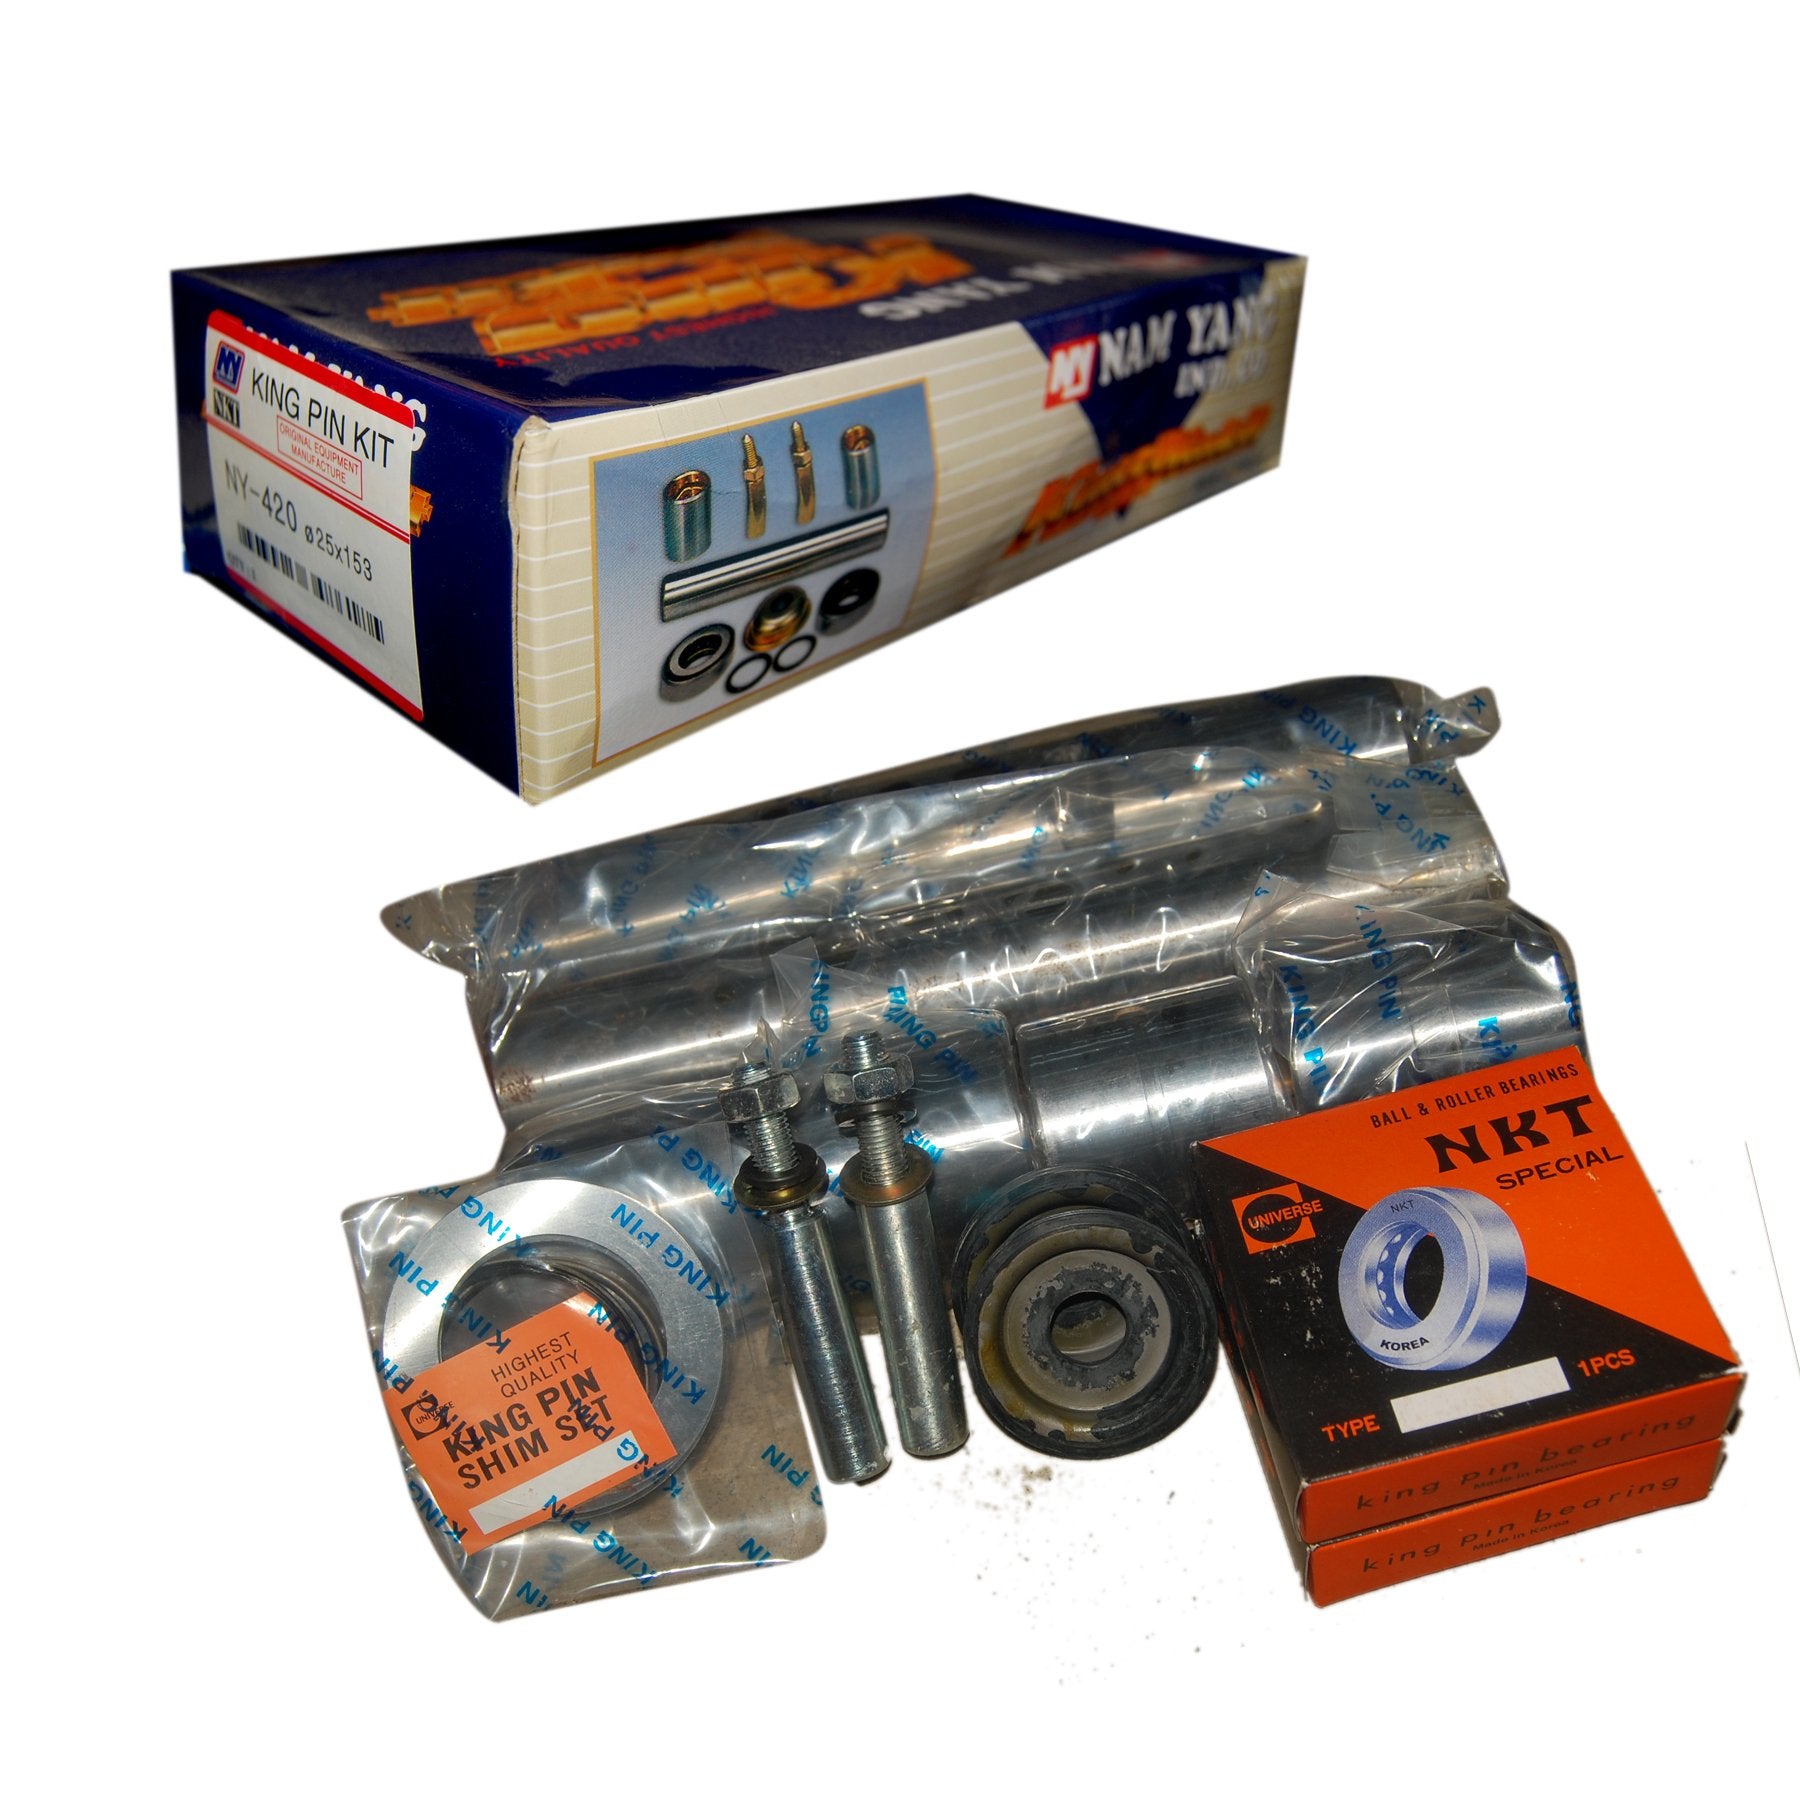 King Pin Kit, NAM YANG, 45x221, 11001-24101, NY-521(NEW) (001278) - Win Store